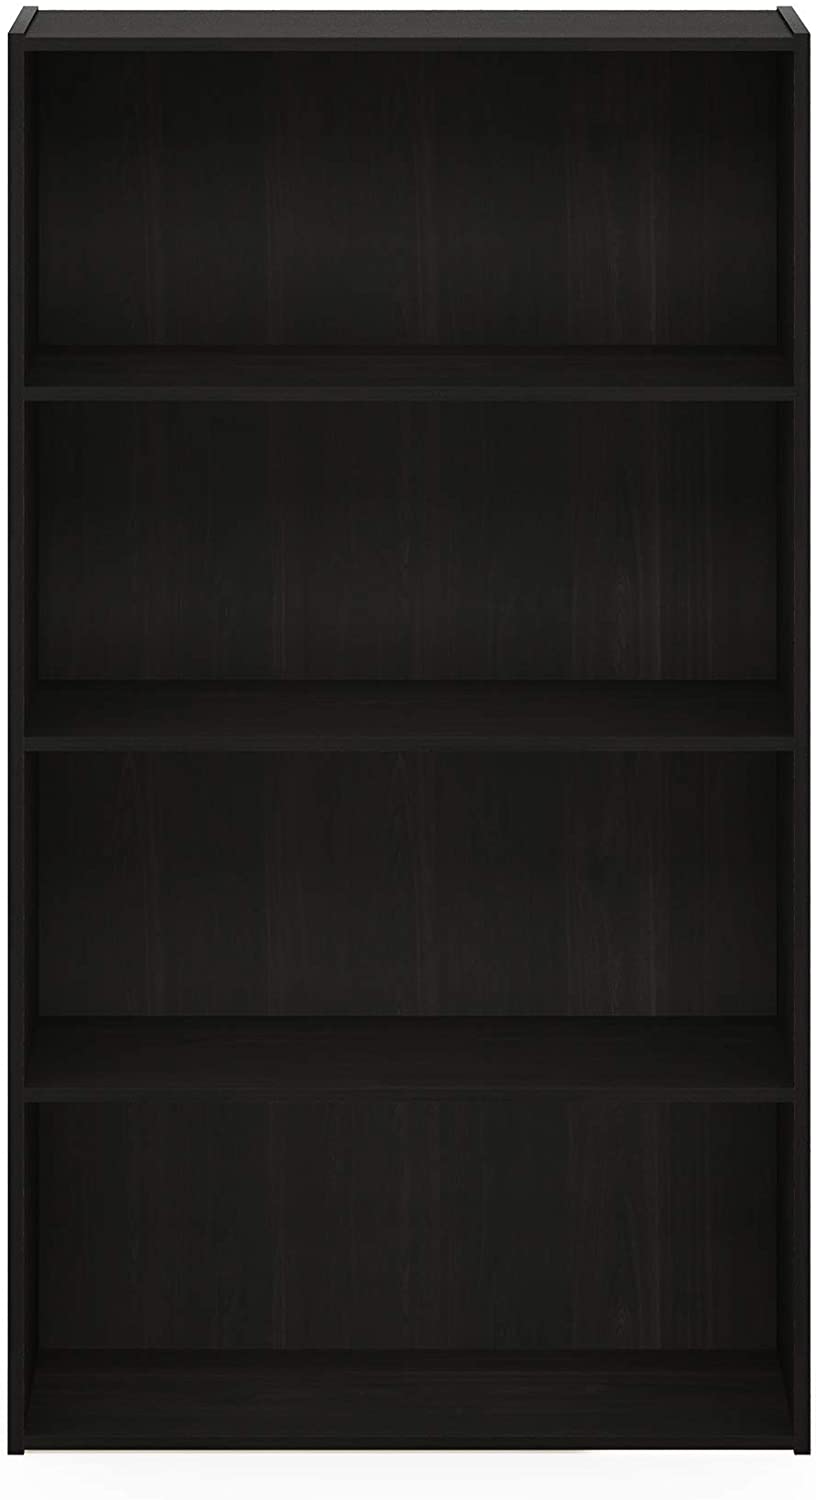 Bookshelf: Espresso 4 Tier Open Shelf